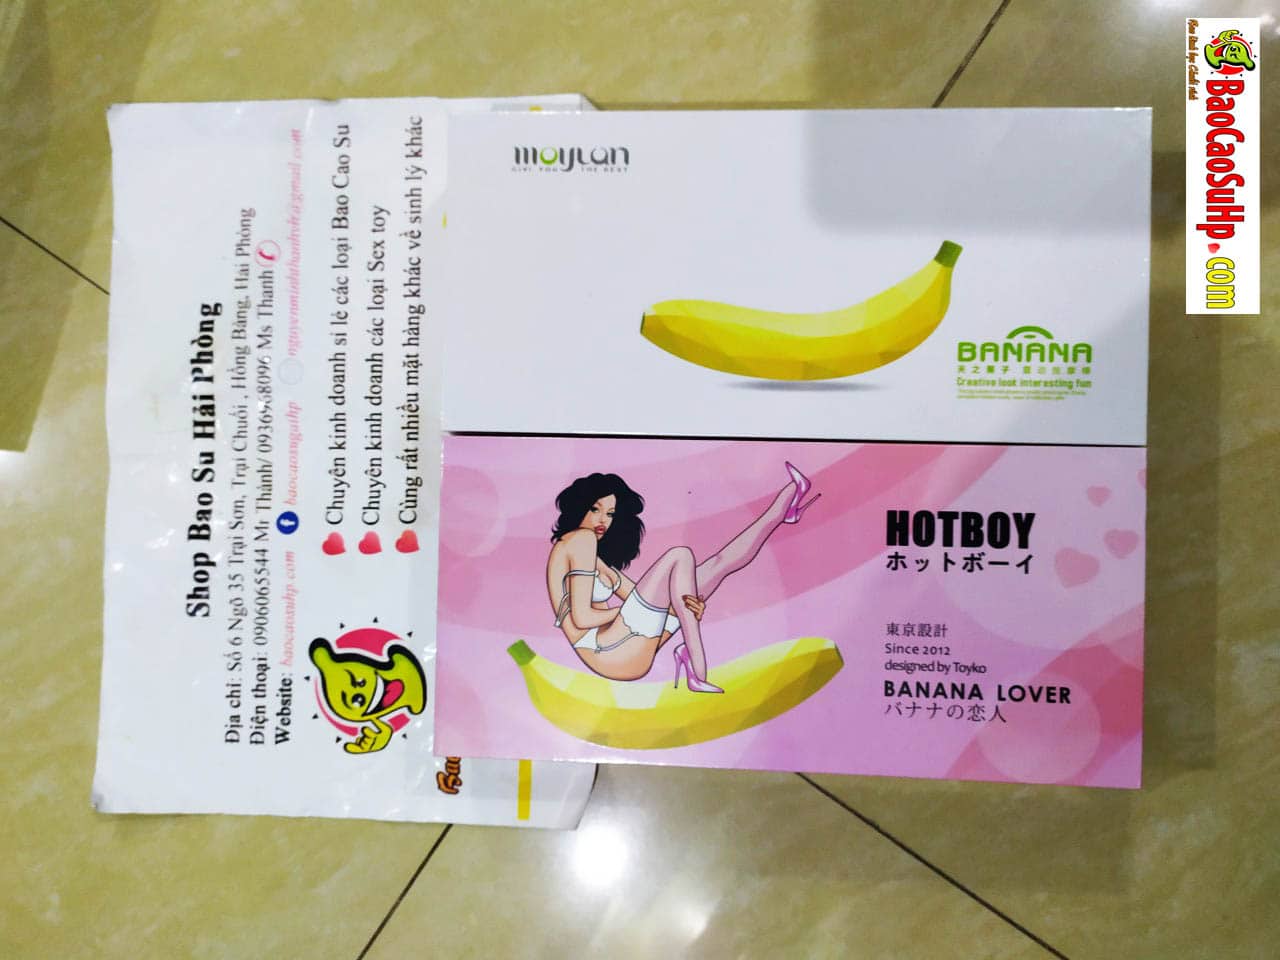 20190324140105 8652789 sextoy duong vat banana chuoi rung - Shop dương vật giả tại Hải Phòng uy tín ship nhanh 24/7